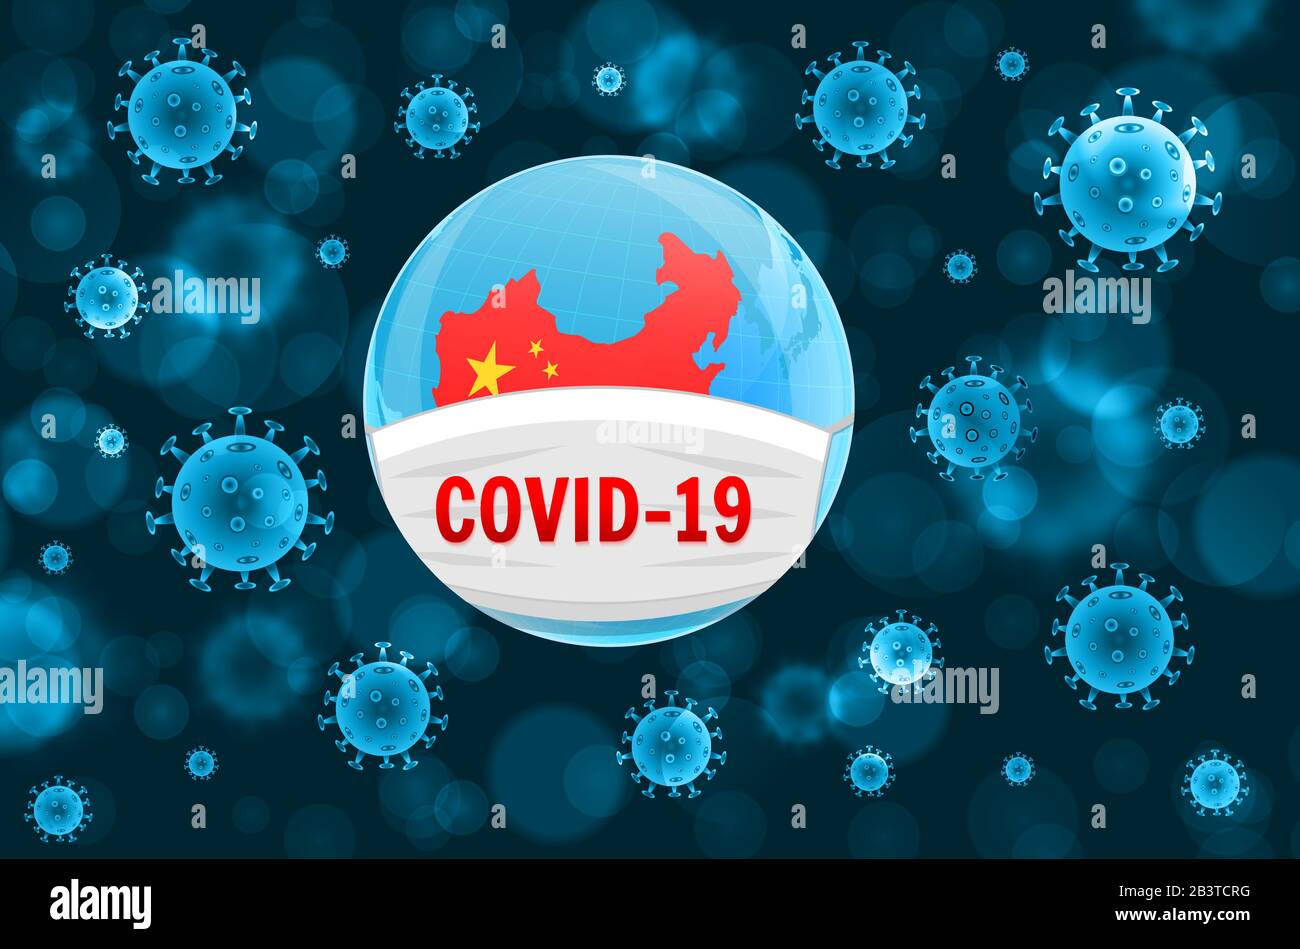 Coronavirus COVID-19-Konzept. Erde in einer medizinischen Maske. Gefährlicher ausbruch des chinesischen nCoV-Coronavirus. Pandemie-Medizinkonzept mit gefährlichen Zellen. Vec Stock Vektor